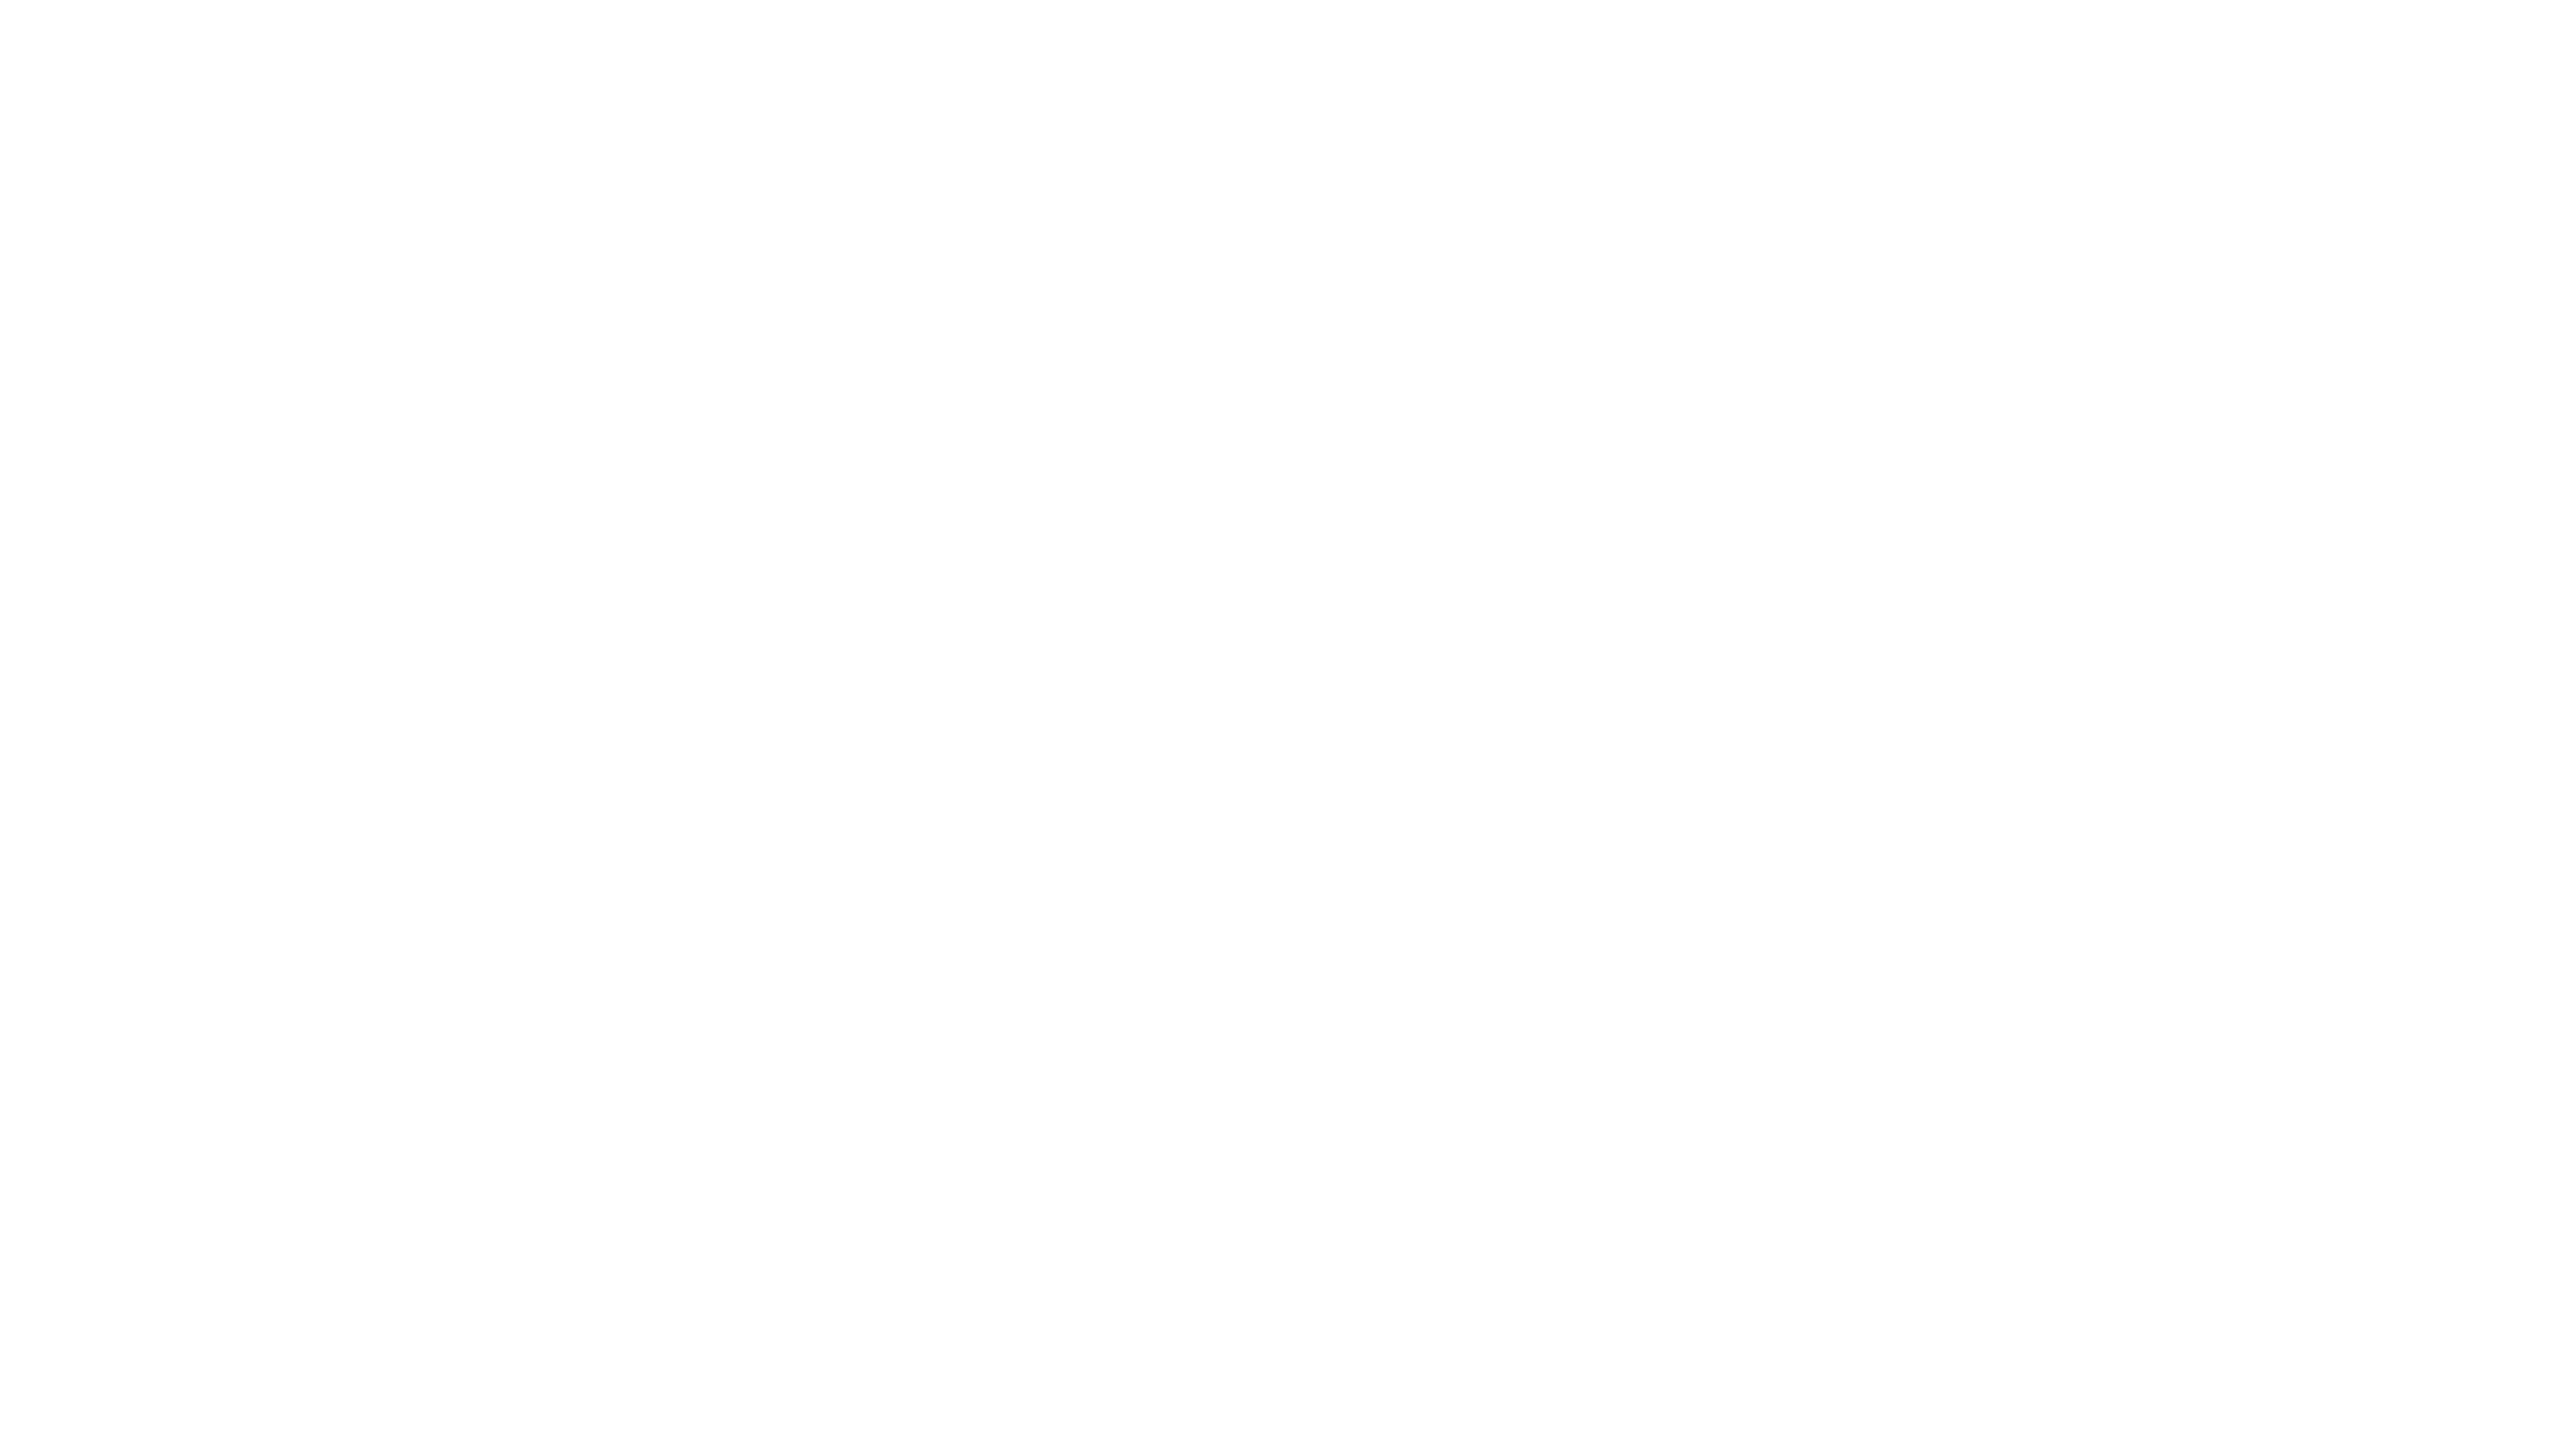 Sport- und Physiotherapie Antrack